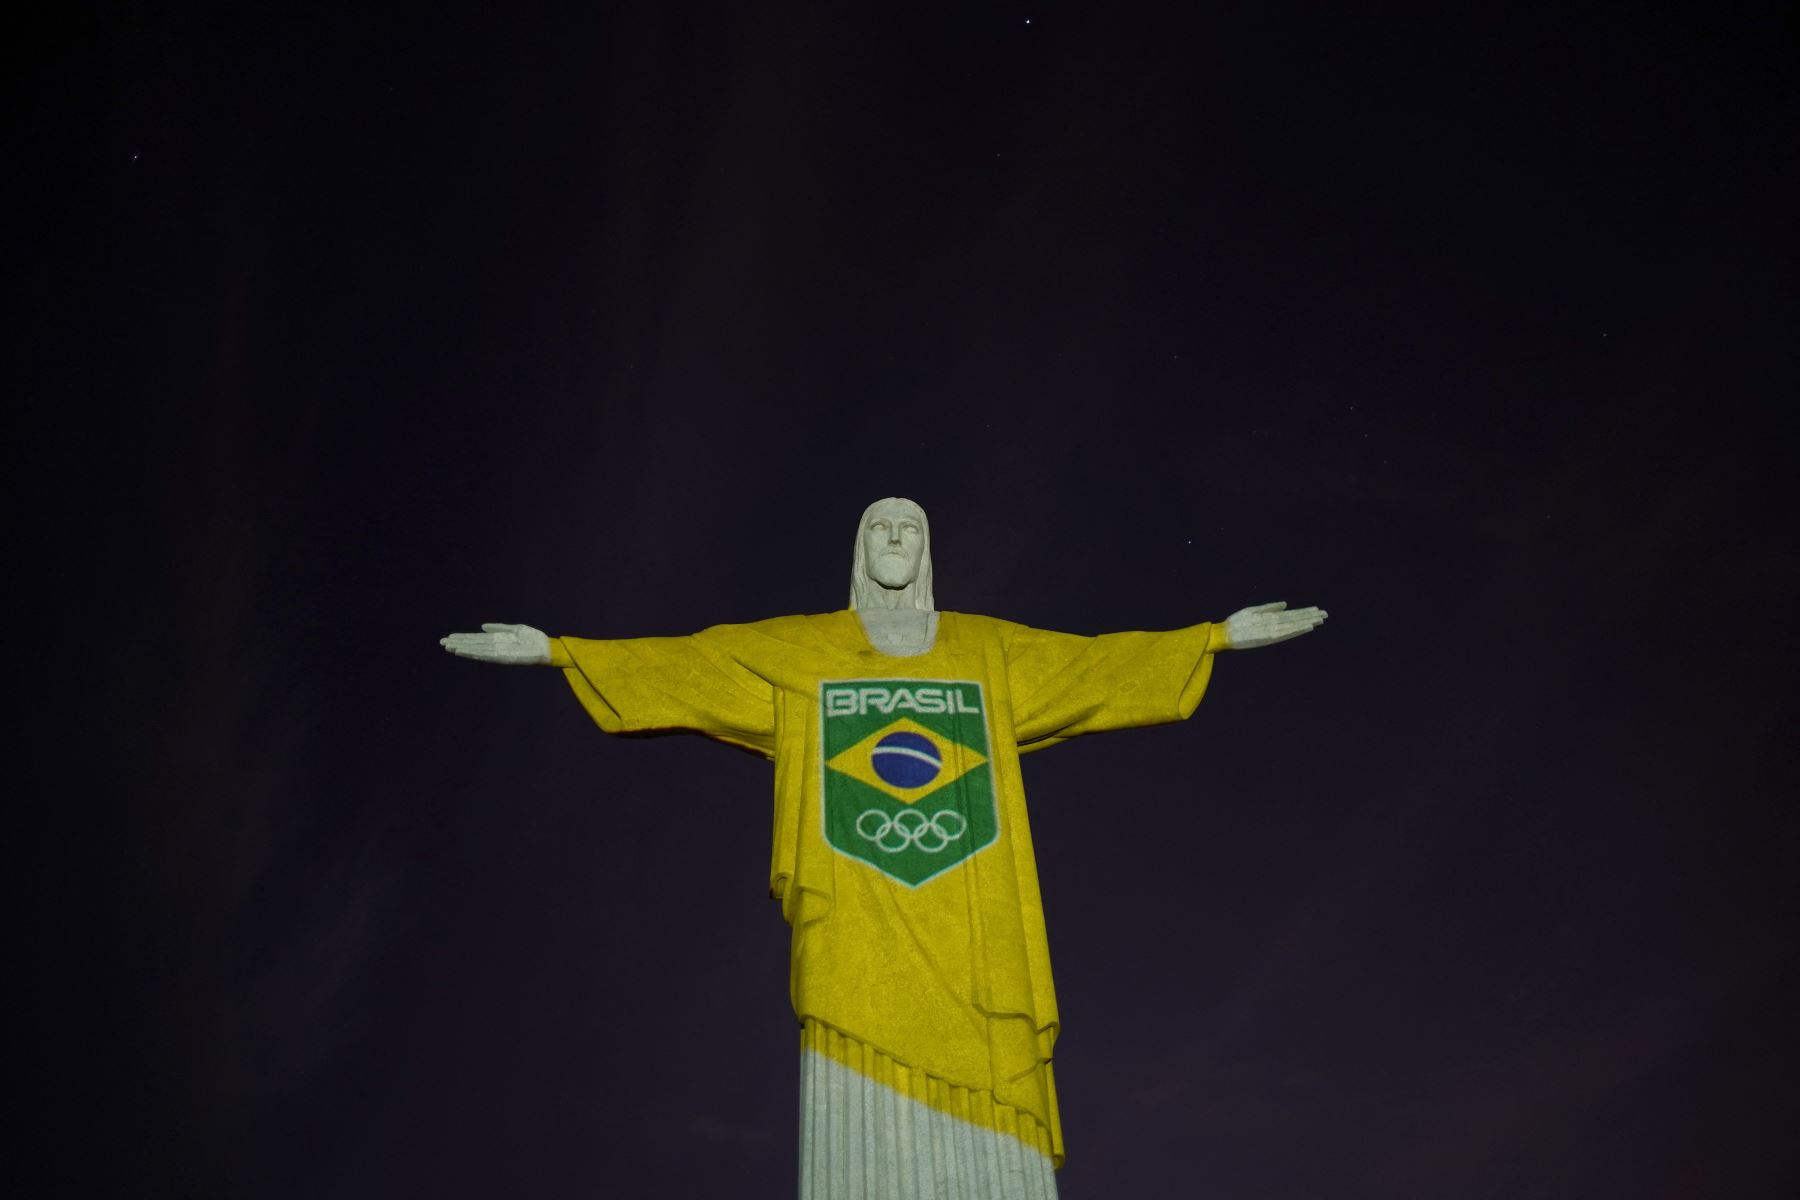 La estatua del Cristo Redentor se ve preparada para ser iluminada con los colores de la bandera brasileña y flechas olímpicas para marcar los 100 días hasta los Juegos Olímpicos de Tokio 2020 en Río de Janeiro, Brasil.
Foto: AFP